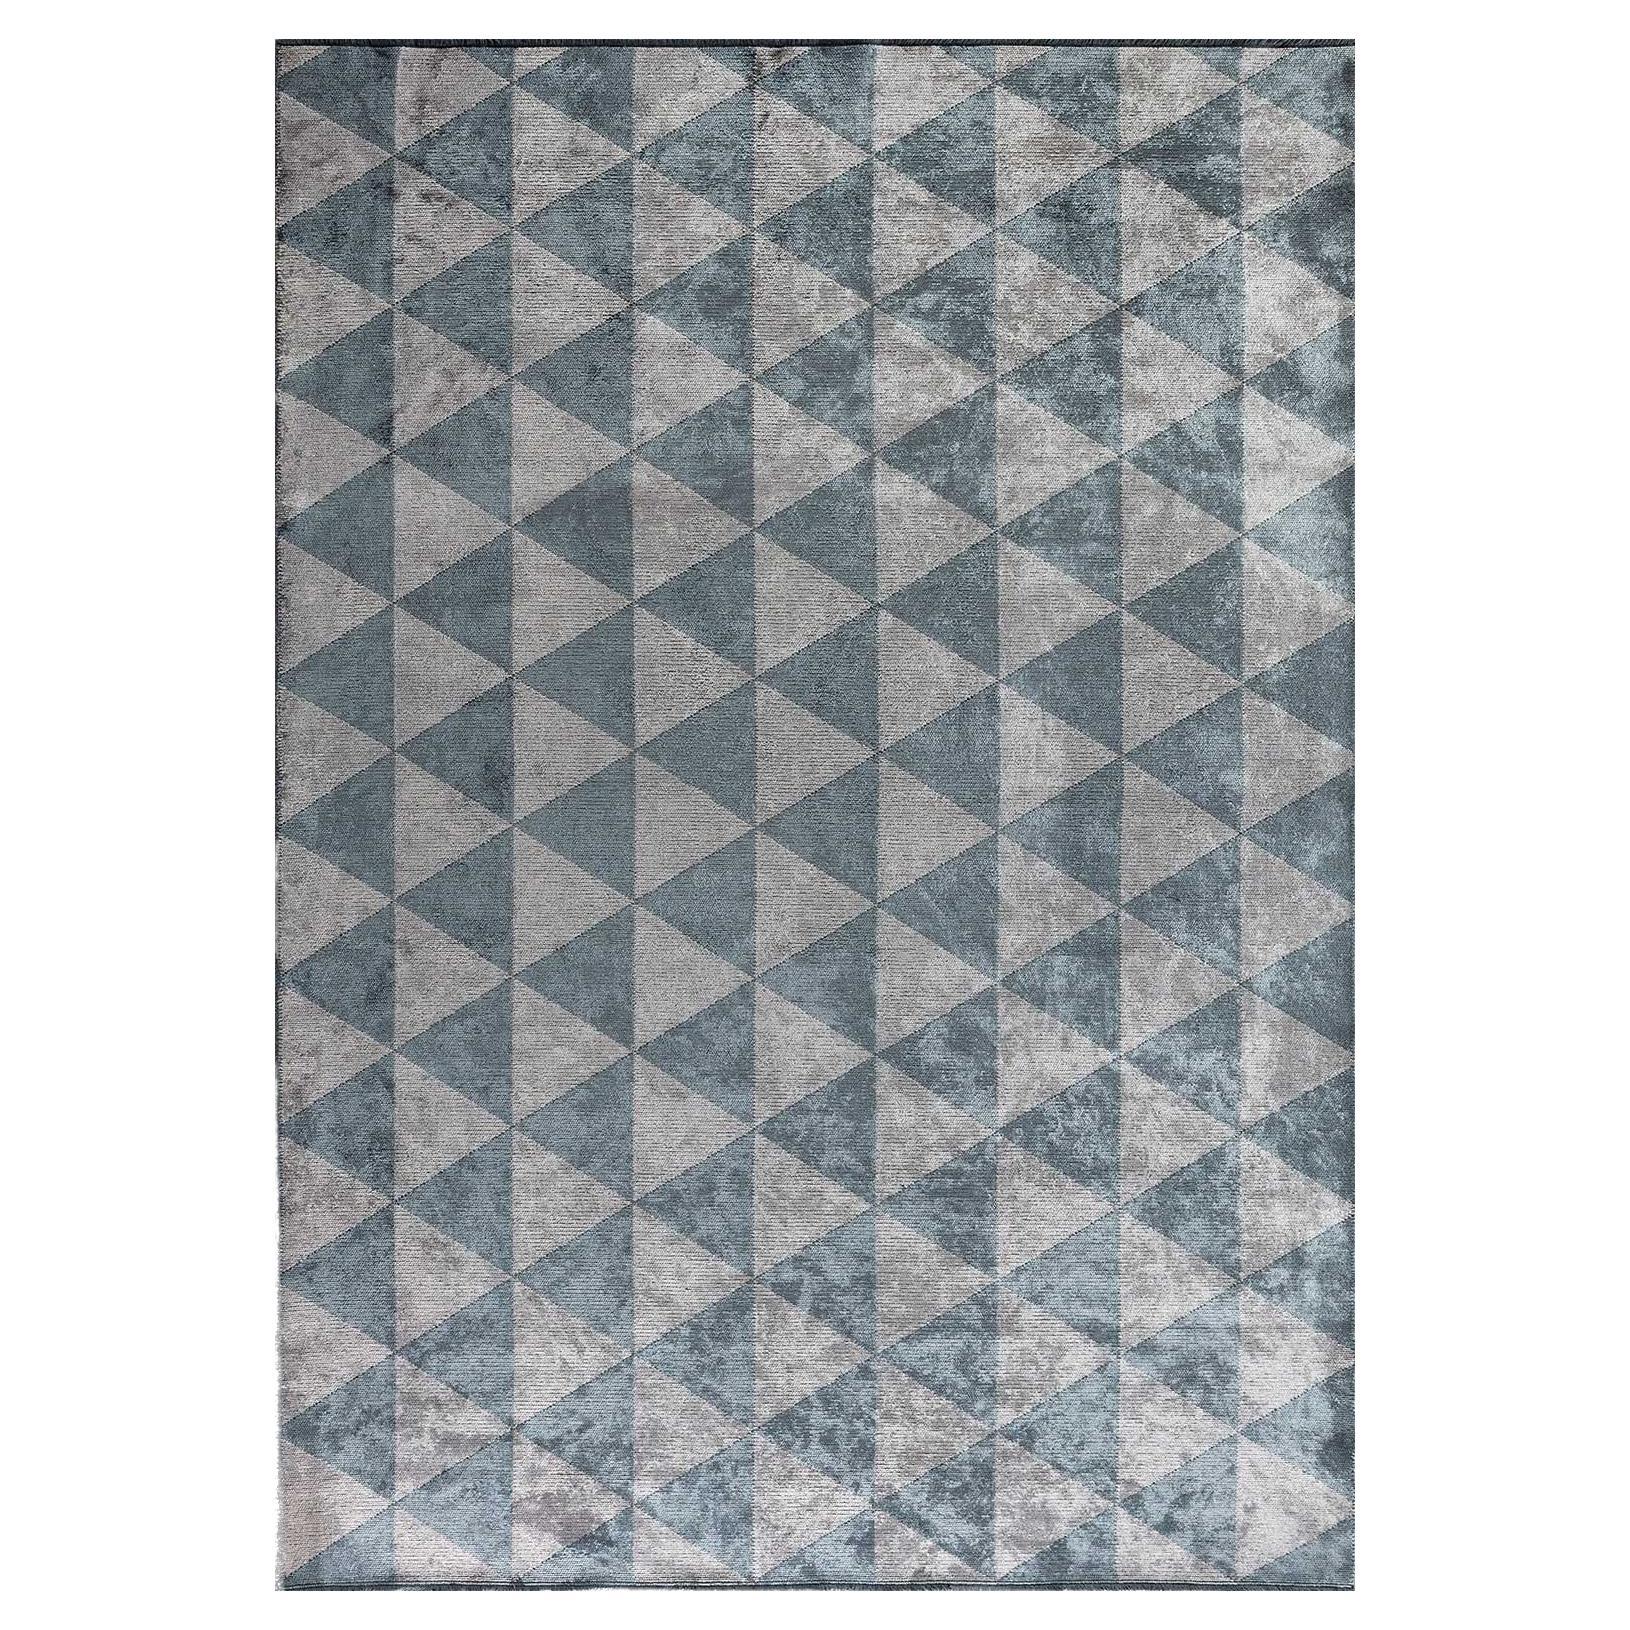 Teppich mit Glanz in Silbergrau und Hellblau und geometrischen Mustern, Diamant-Dreieck 